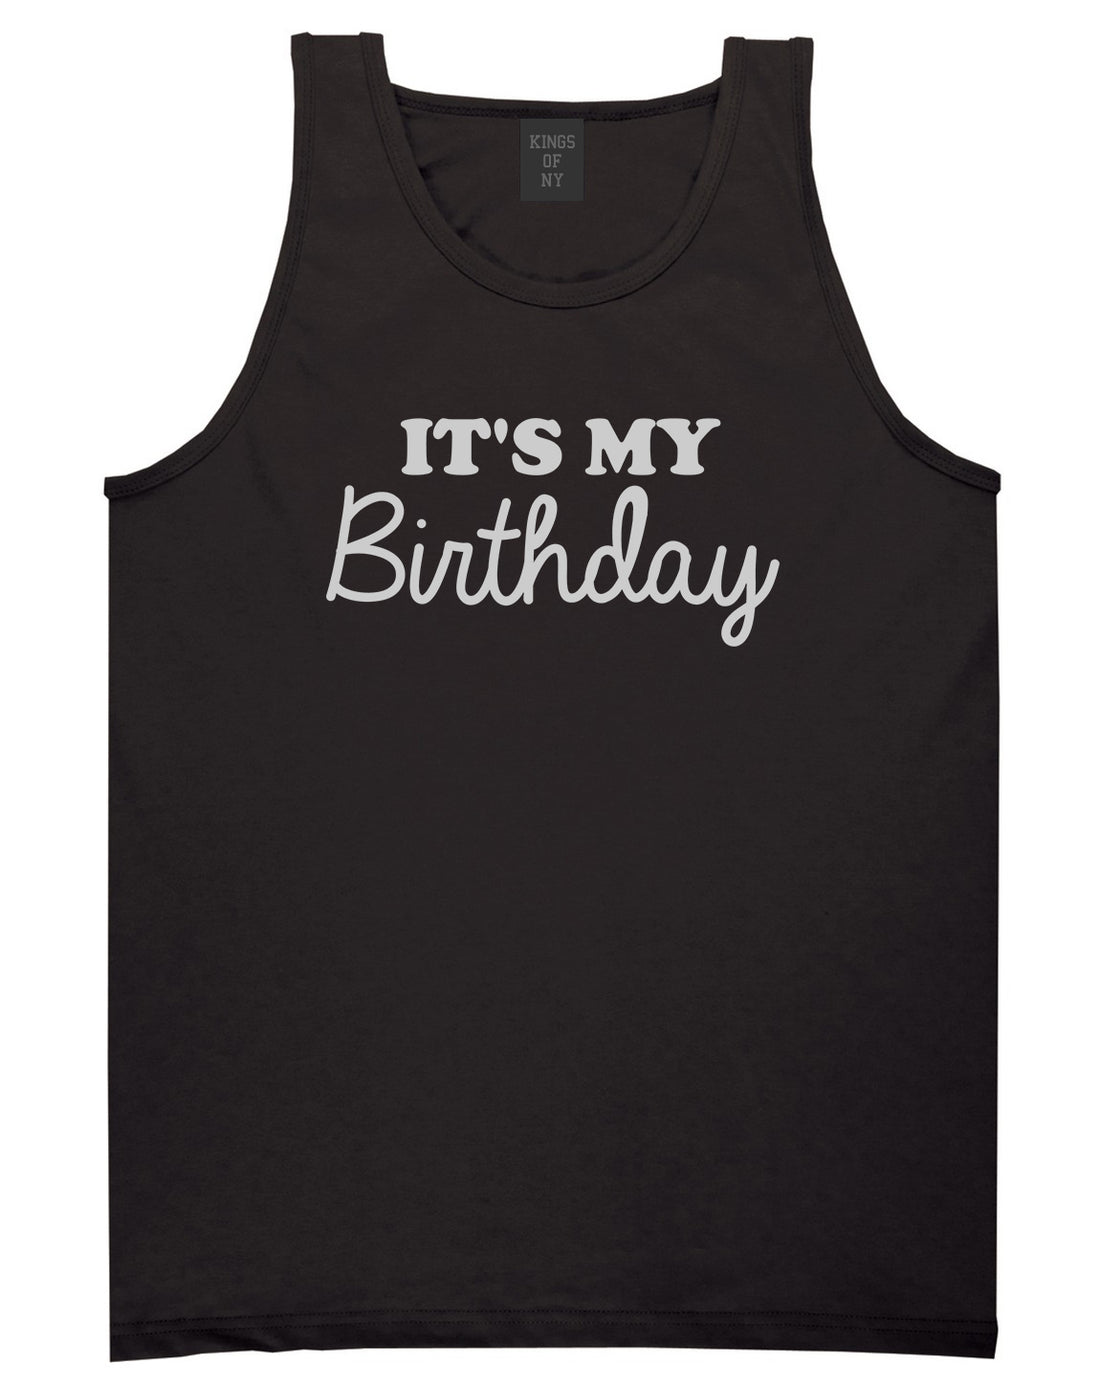 Its My Birthday Mens Tank Top T-Shirt Black